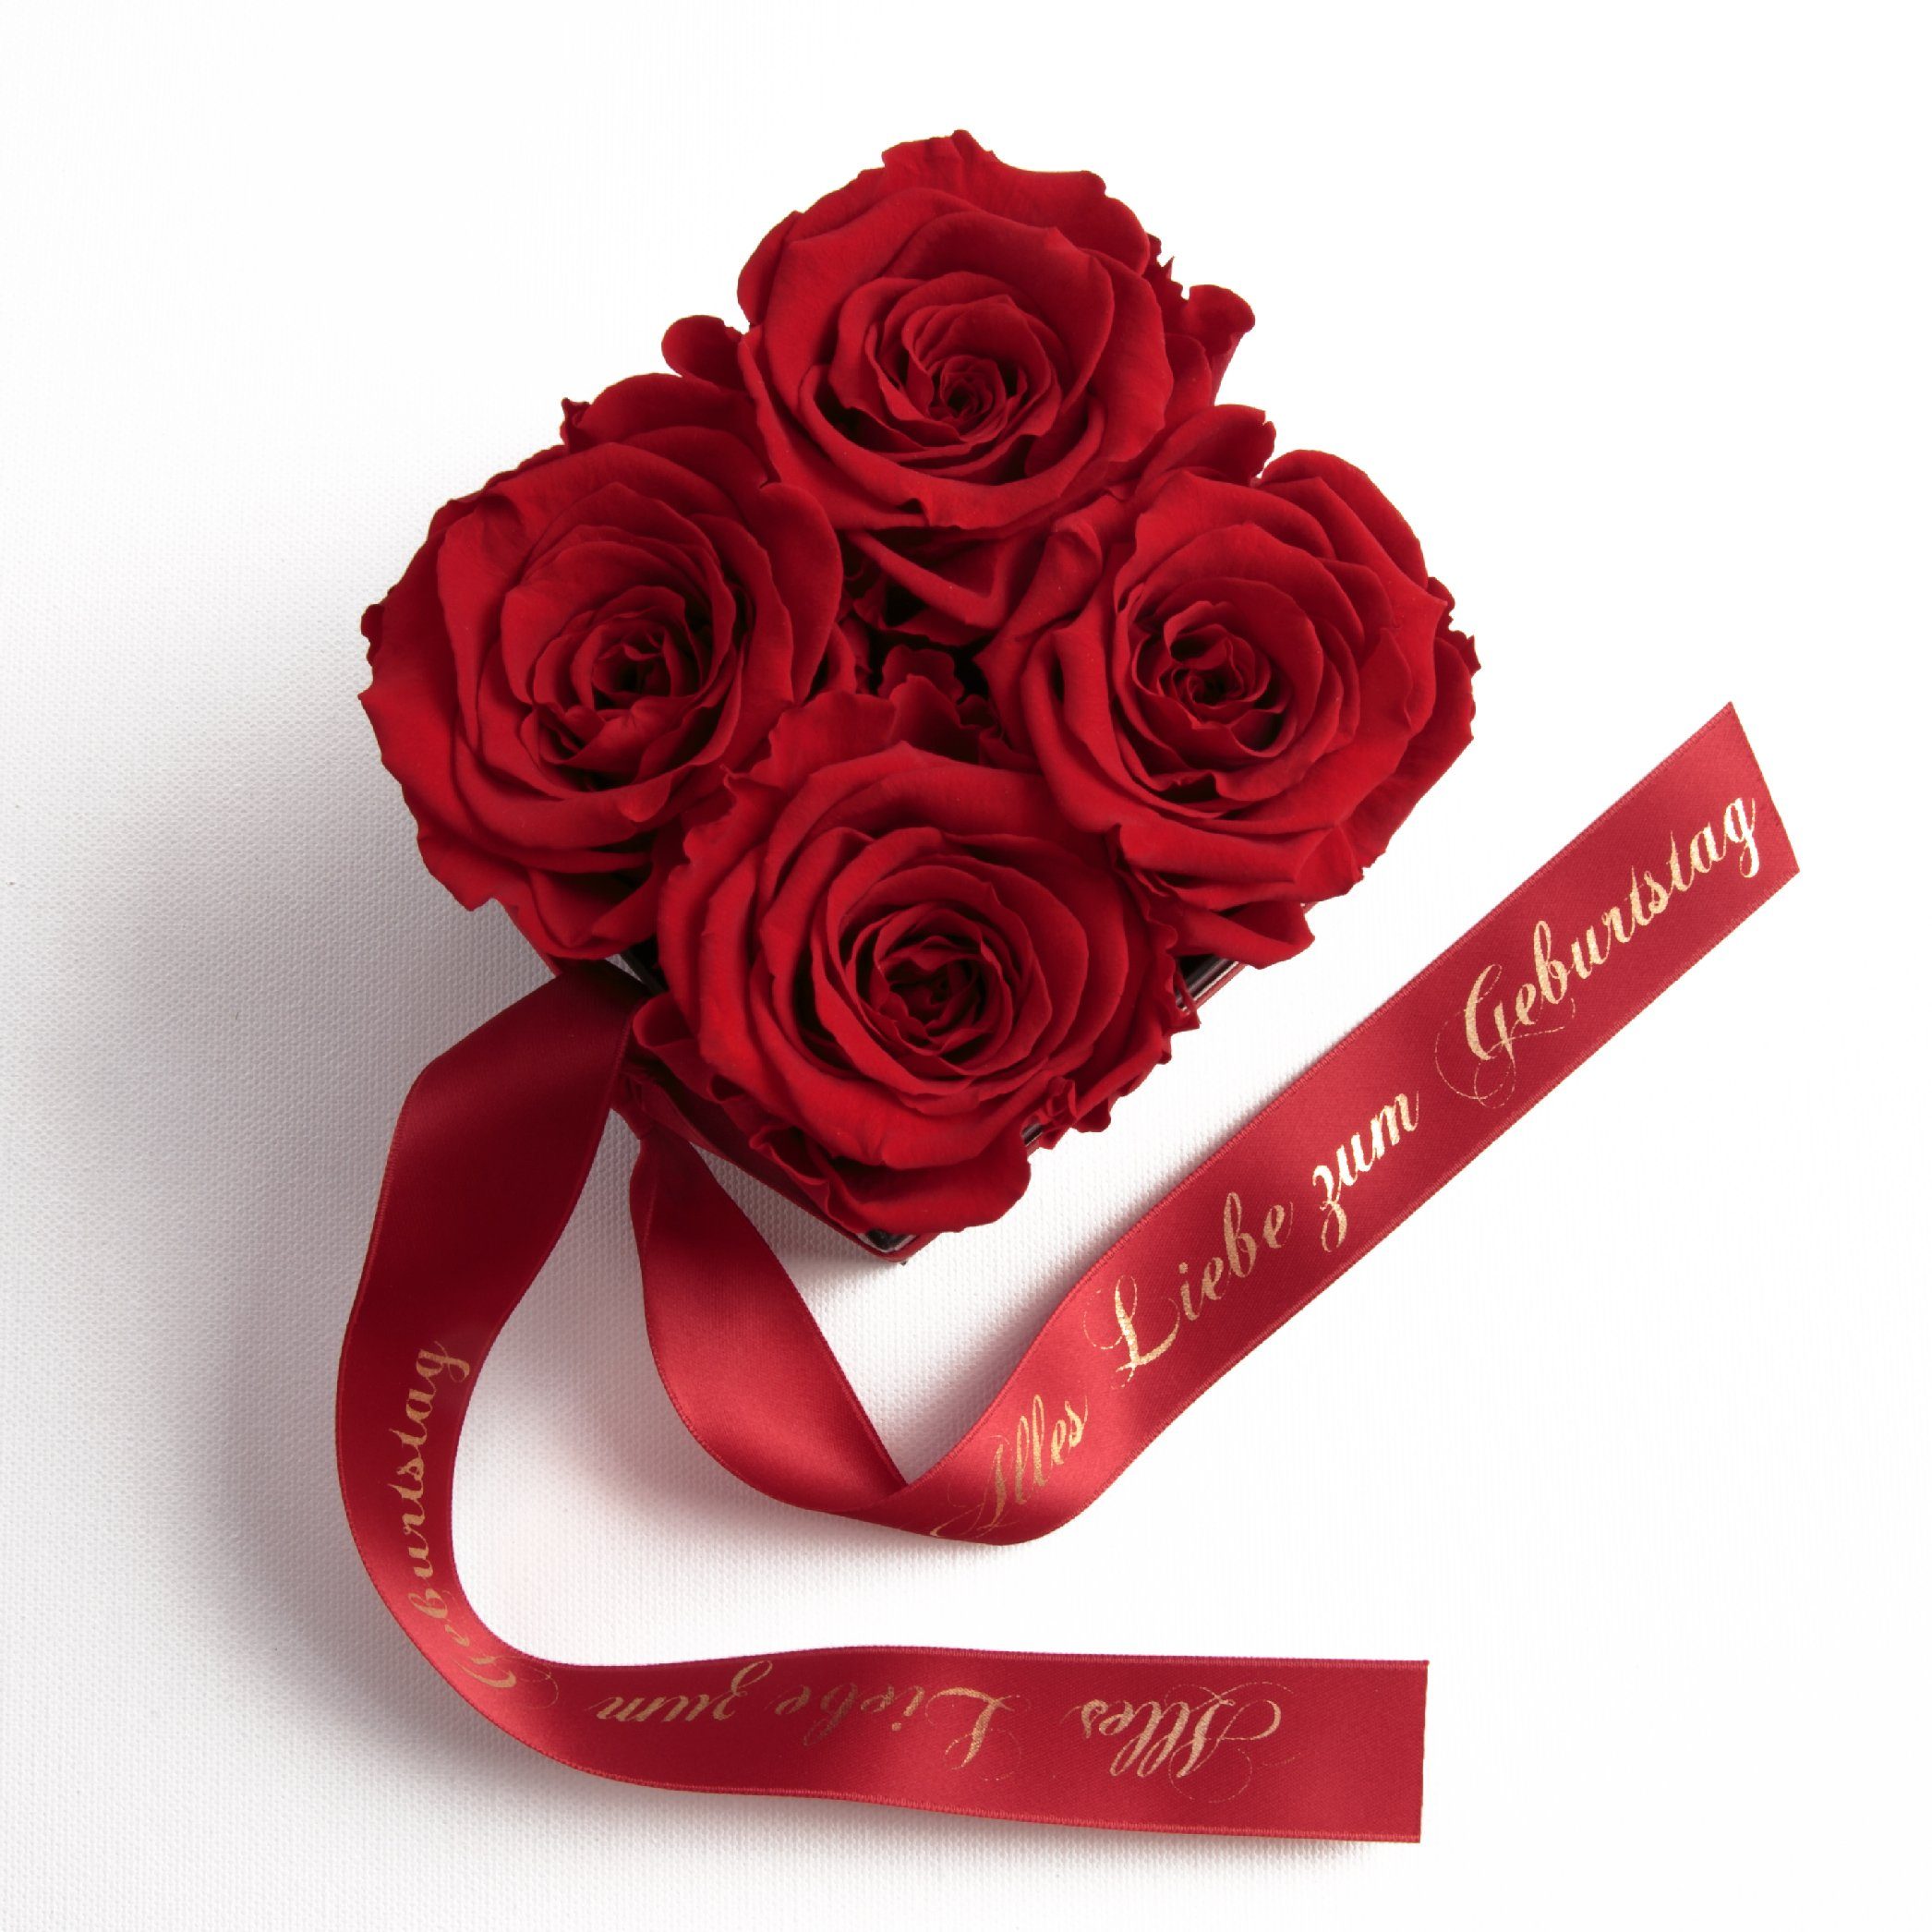 ROSEMARIE SCHULZ Heidelberg Dekoobjekt Rosenbox echte Rosen Alles Liebe zum Geburtstag Geschenk für Frauen (1 St), Echte konservierte Rosen Rot